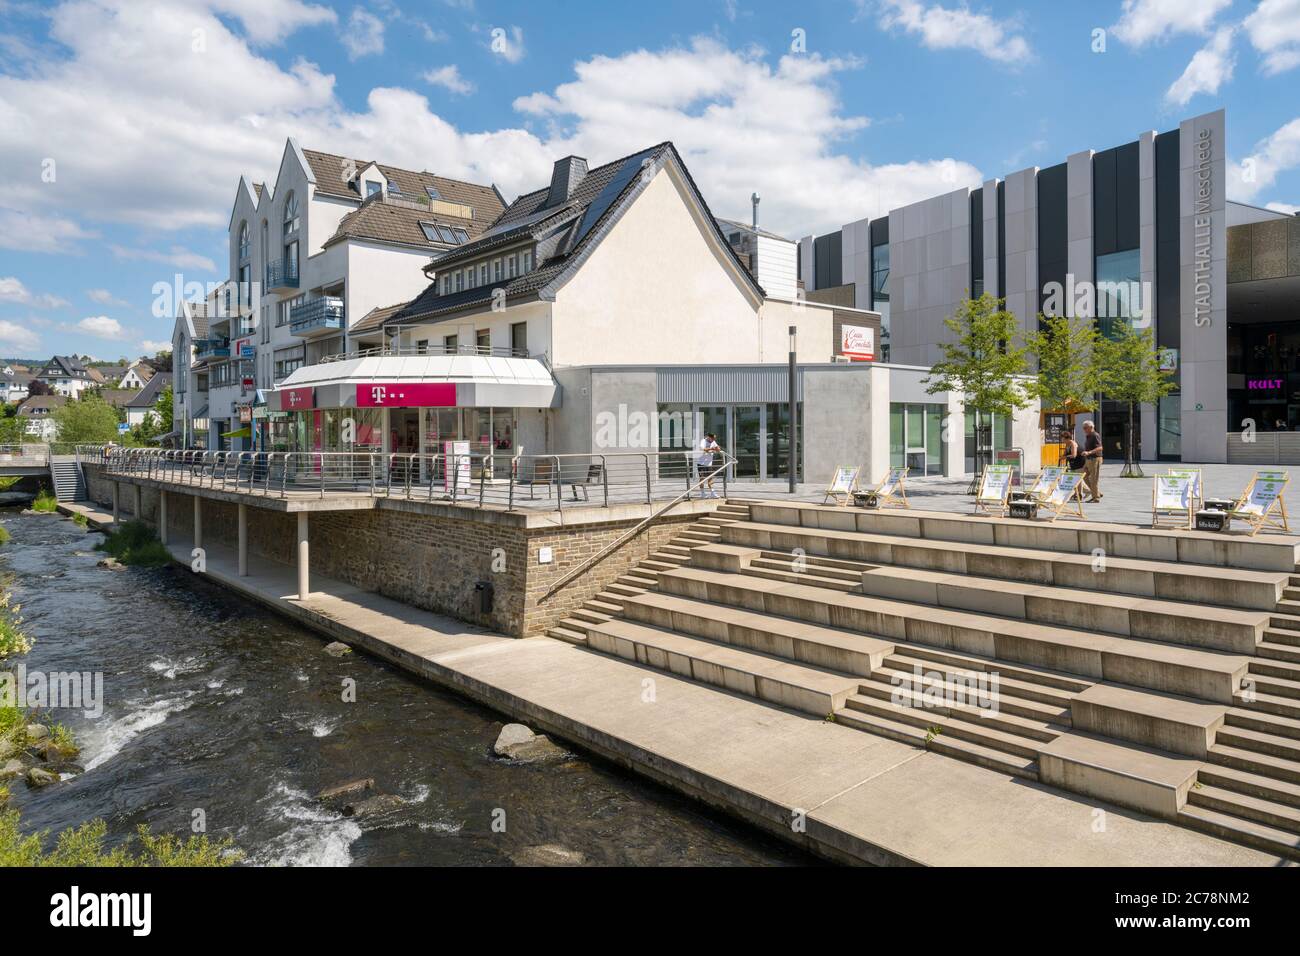 Deutschland, Nordrhein-Westfalen, Hochsauerlandkreis, Meschede, Architektur an der Henne (Winziger Platz) mit Stadthalle Stock Photo